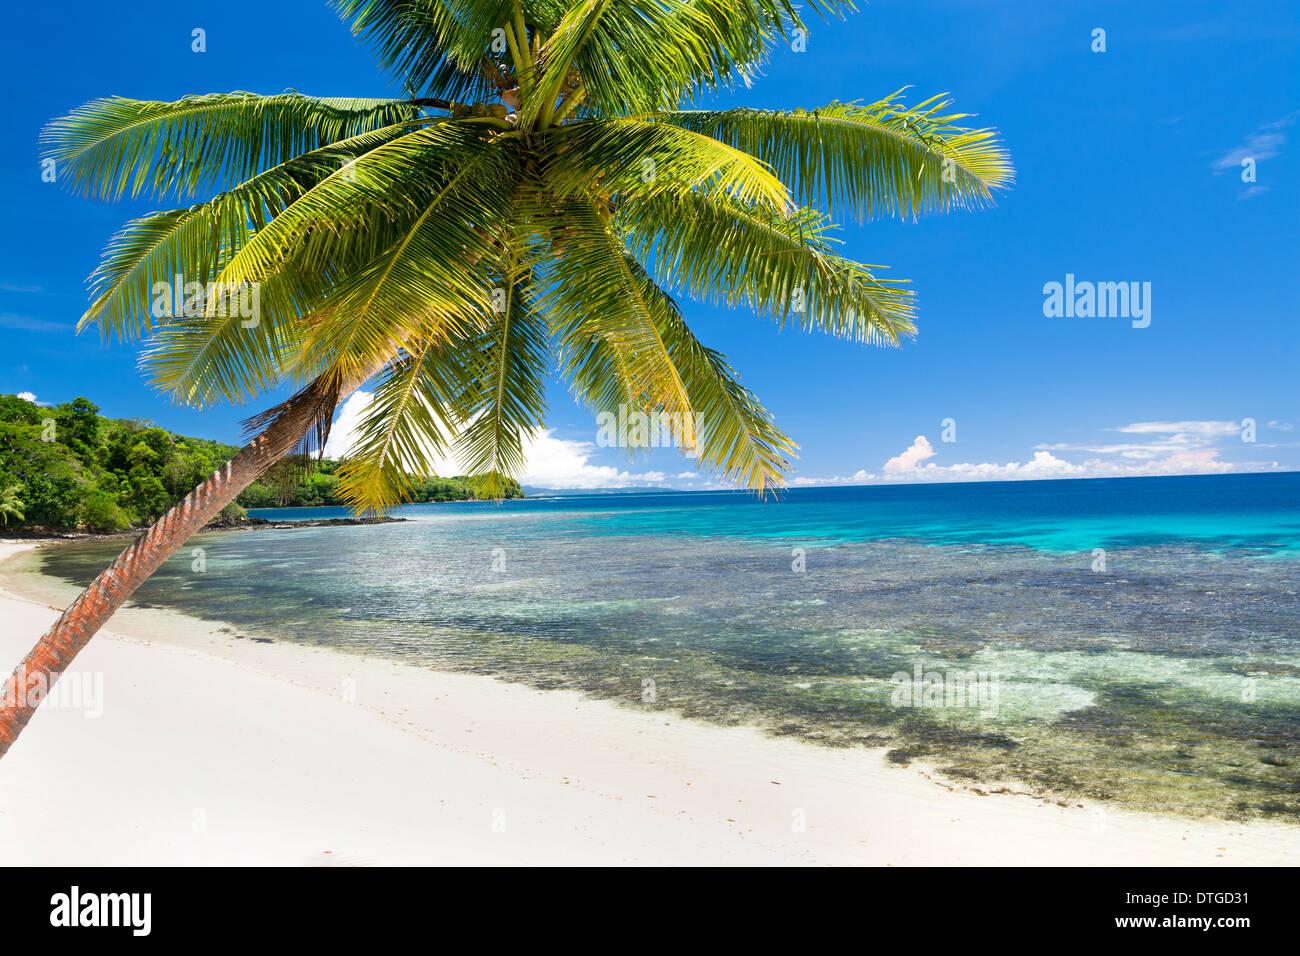 Une île à Fidji avec plage de sable blanc, eau turquoise et d'un grand, beau ciel montre une escapade paradise pour les voyageurs Banque D'Images